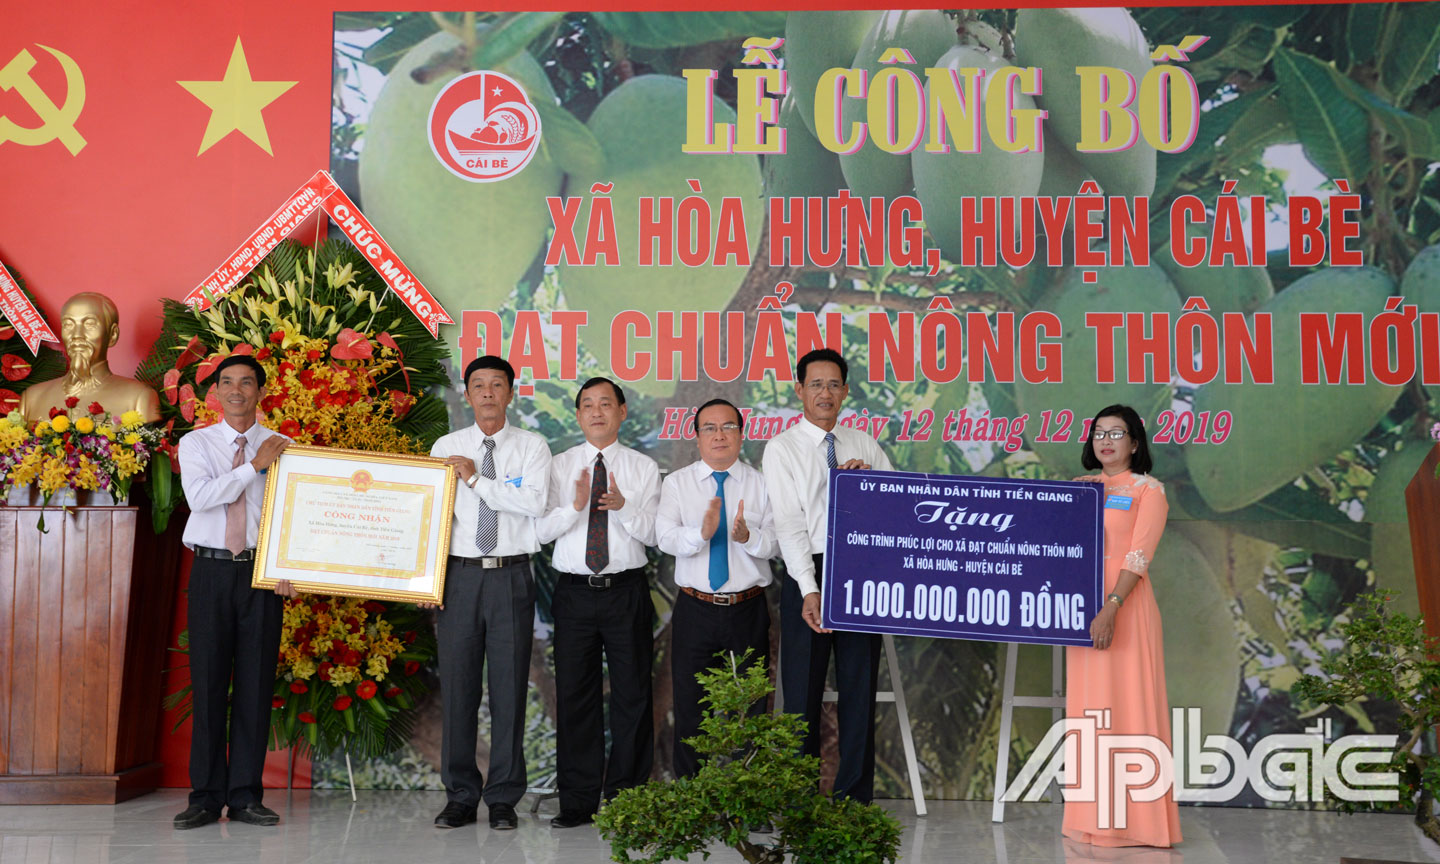 Đồng chí Nguyễn Văn Vĩnh và đồng chí Phạm Anh Tuấn trao Bằng công nhận xã đạt chuẩn NTM và Bảng tượng trưng tặng công trình phúc lợi 1 tỷ đồng cho xã Hòa Hưng.